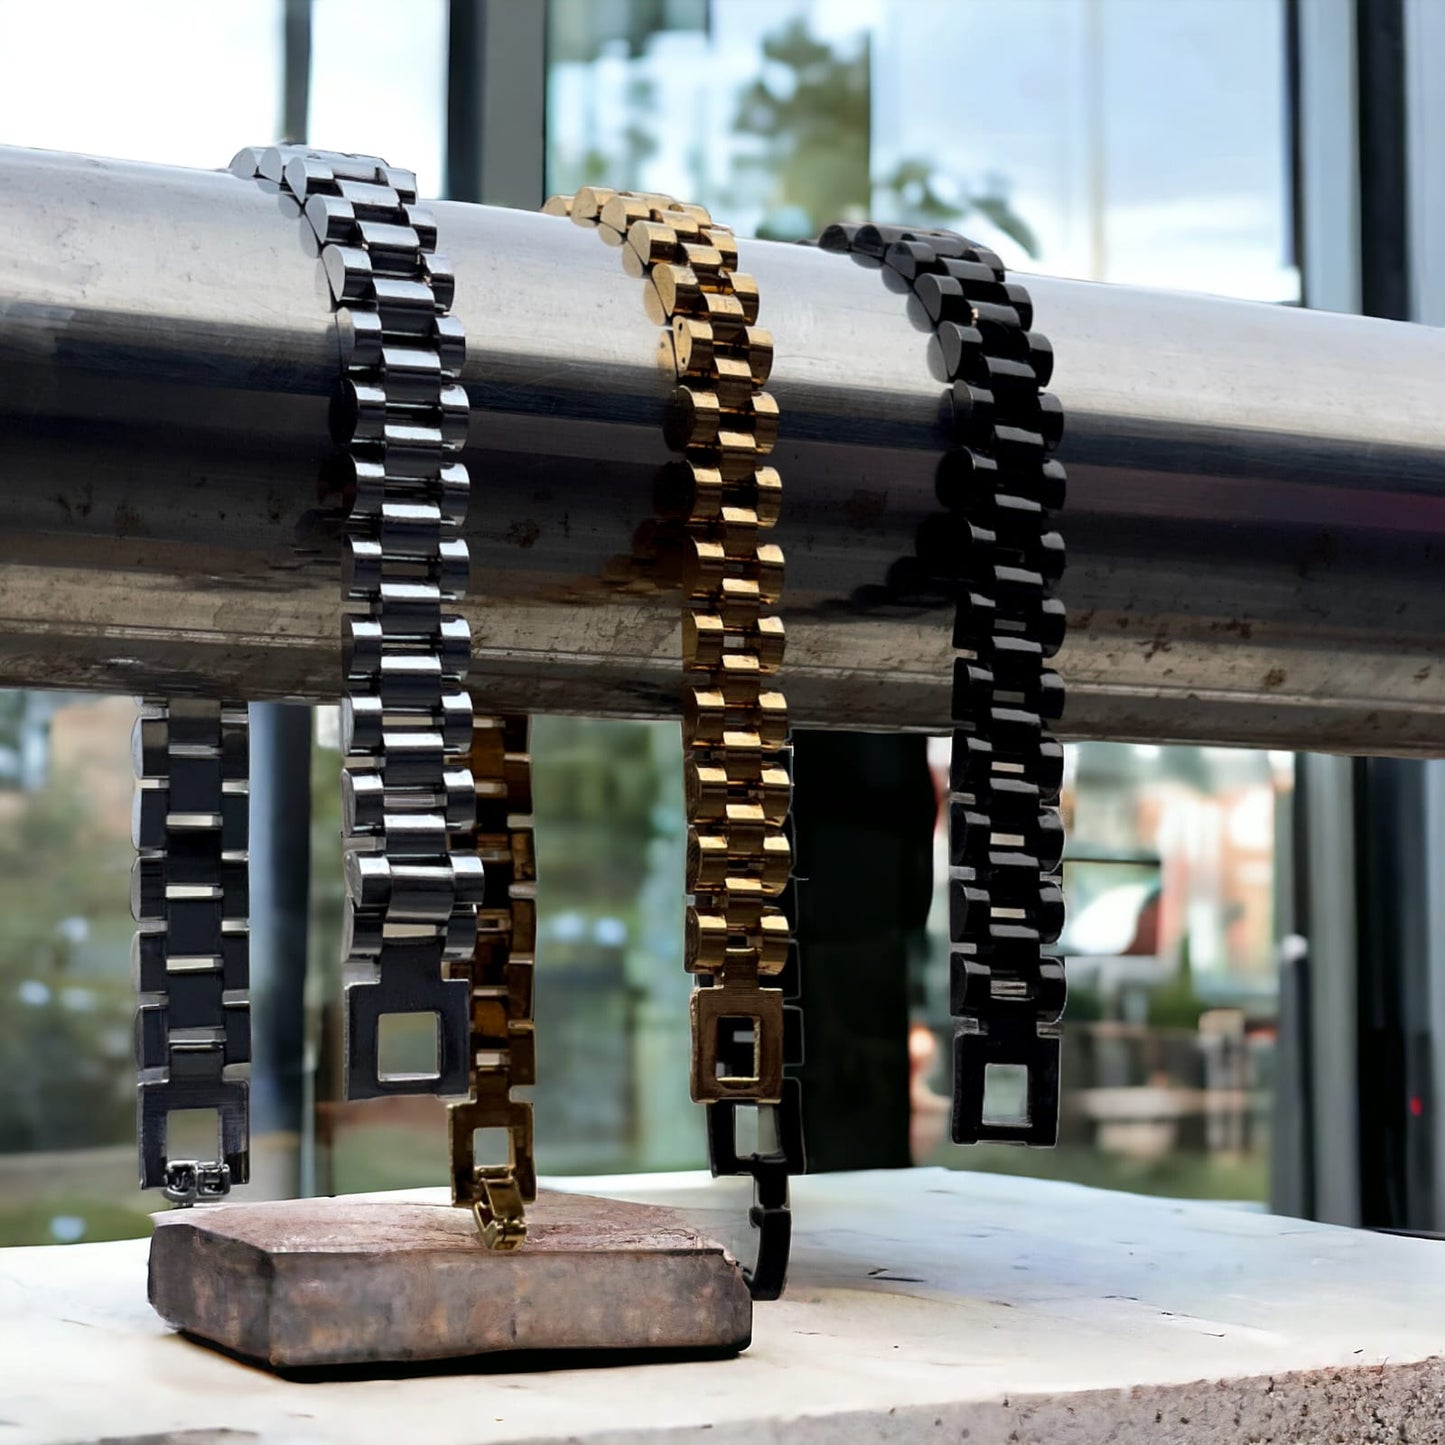 Stainless steel bracelet for men and women